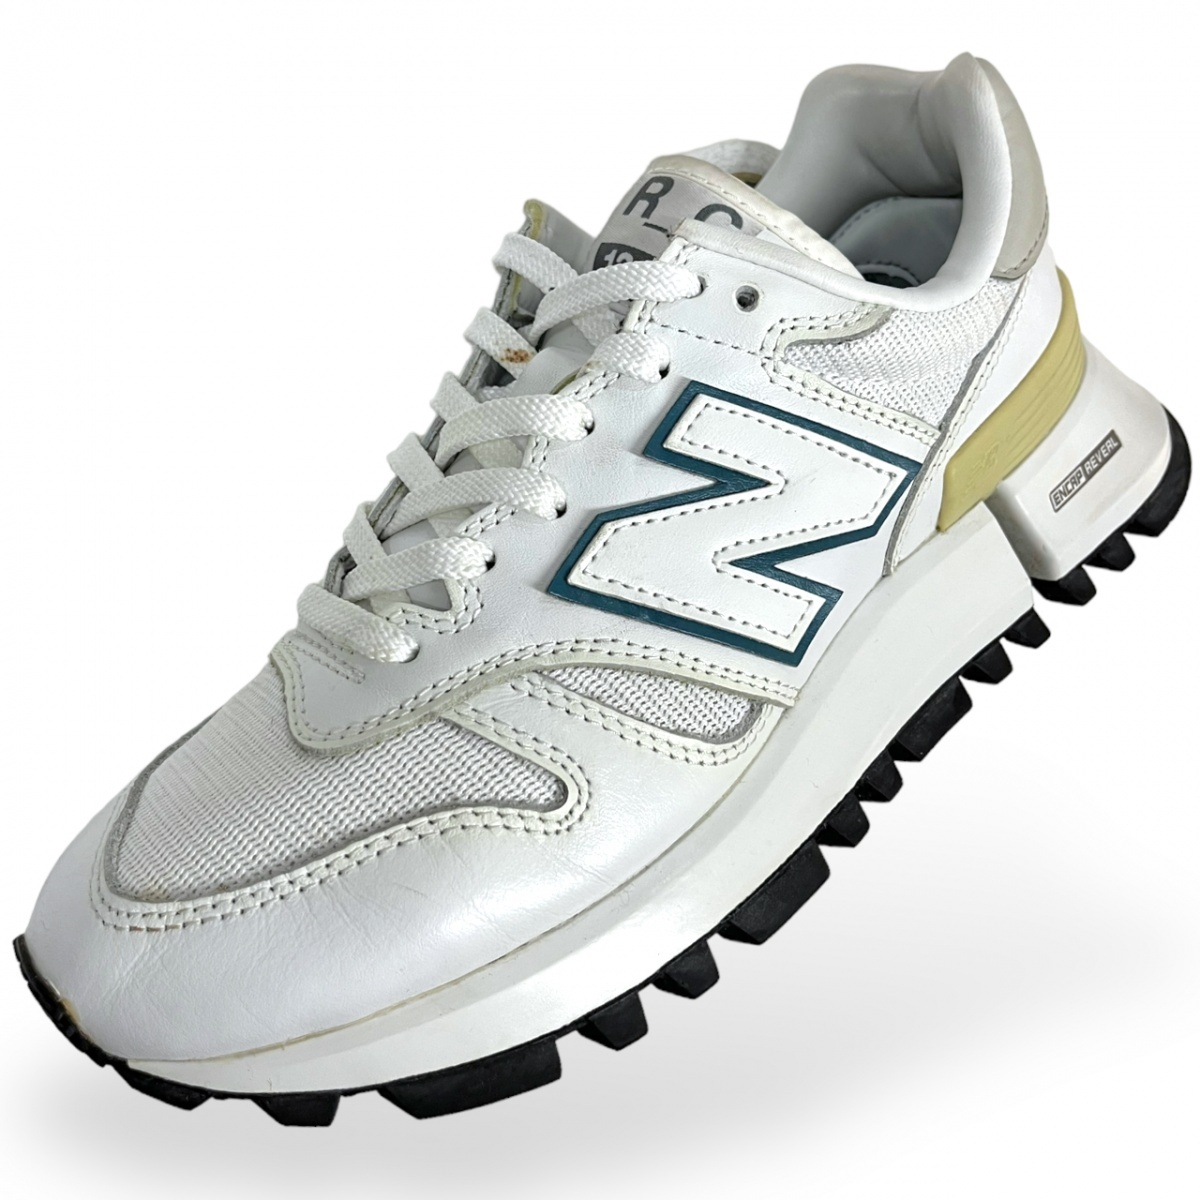 21 год производства New Balance New balance M1300 low cut кожа сетка спортивные туфли MS1300WG обувь Vibram подошва обувь 26.5cm белый 